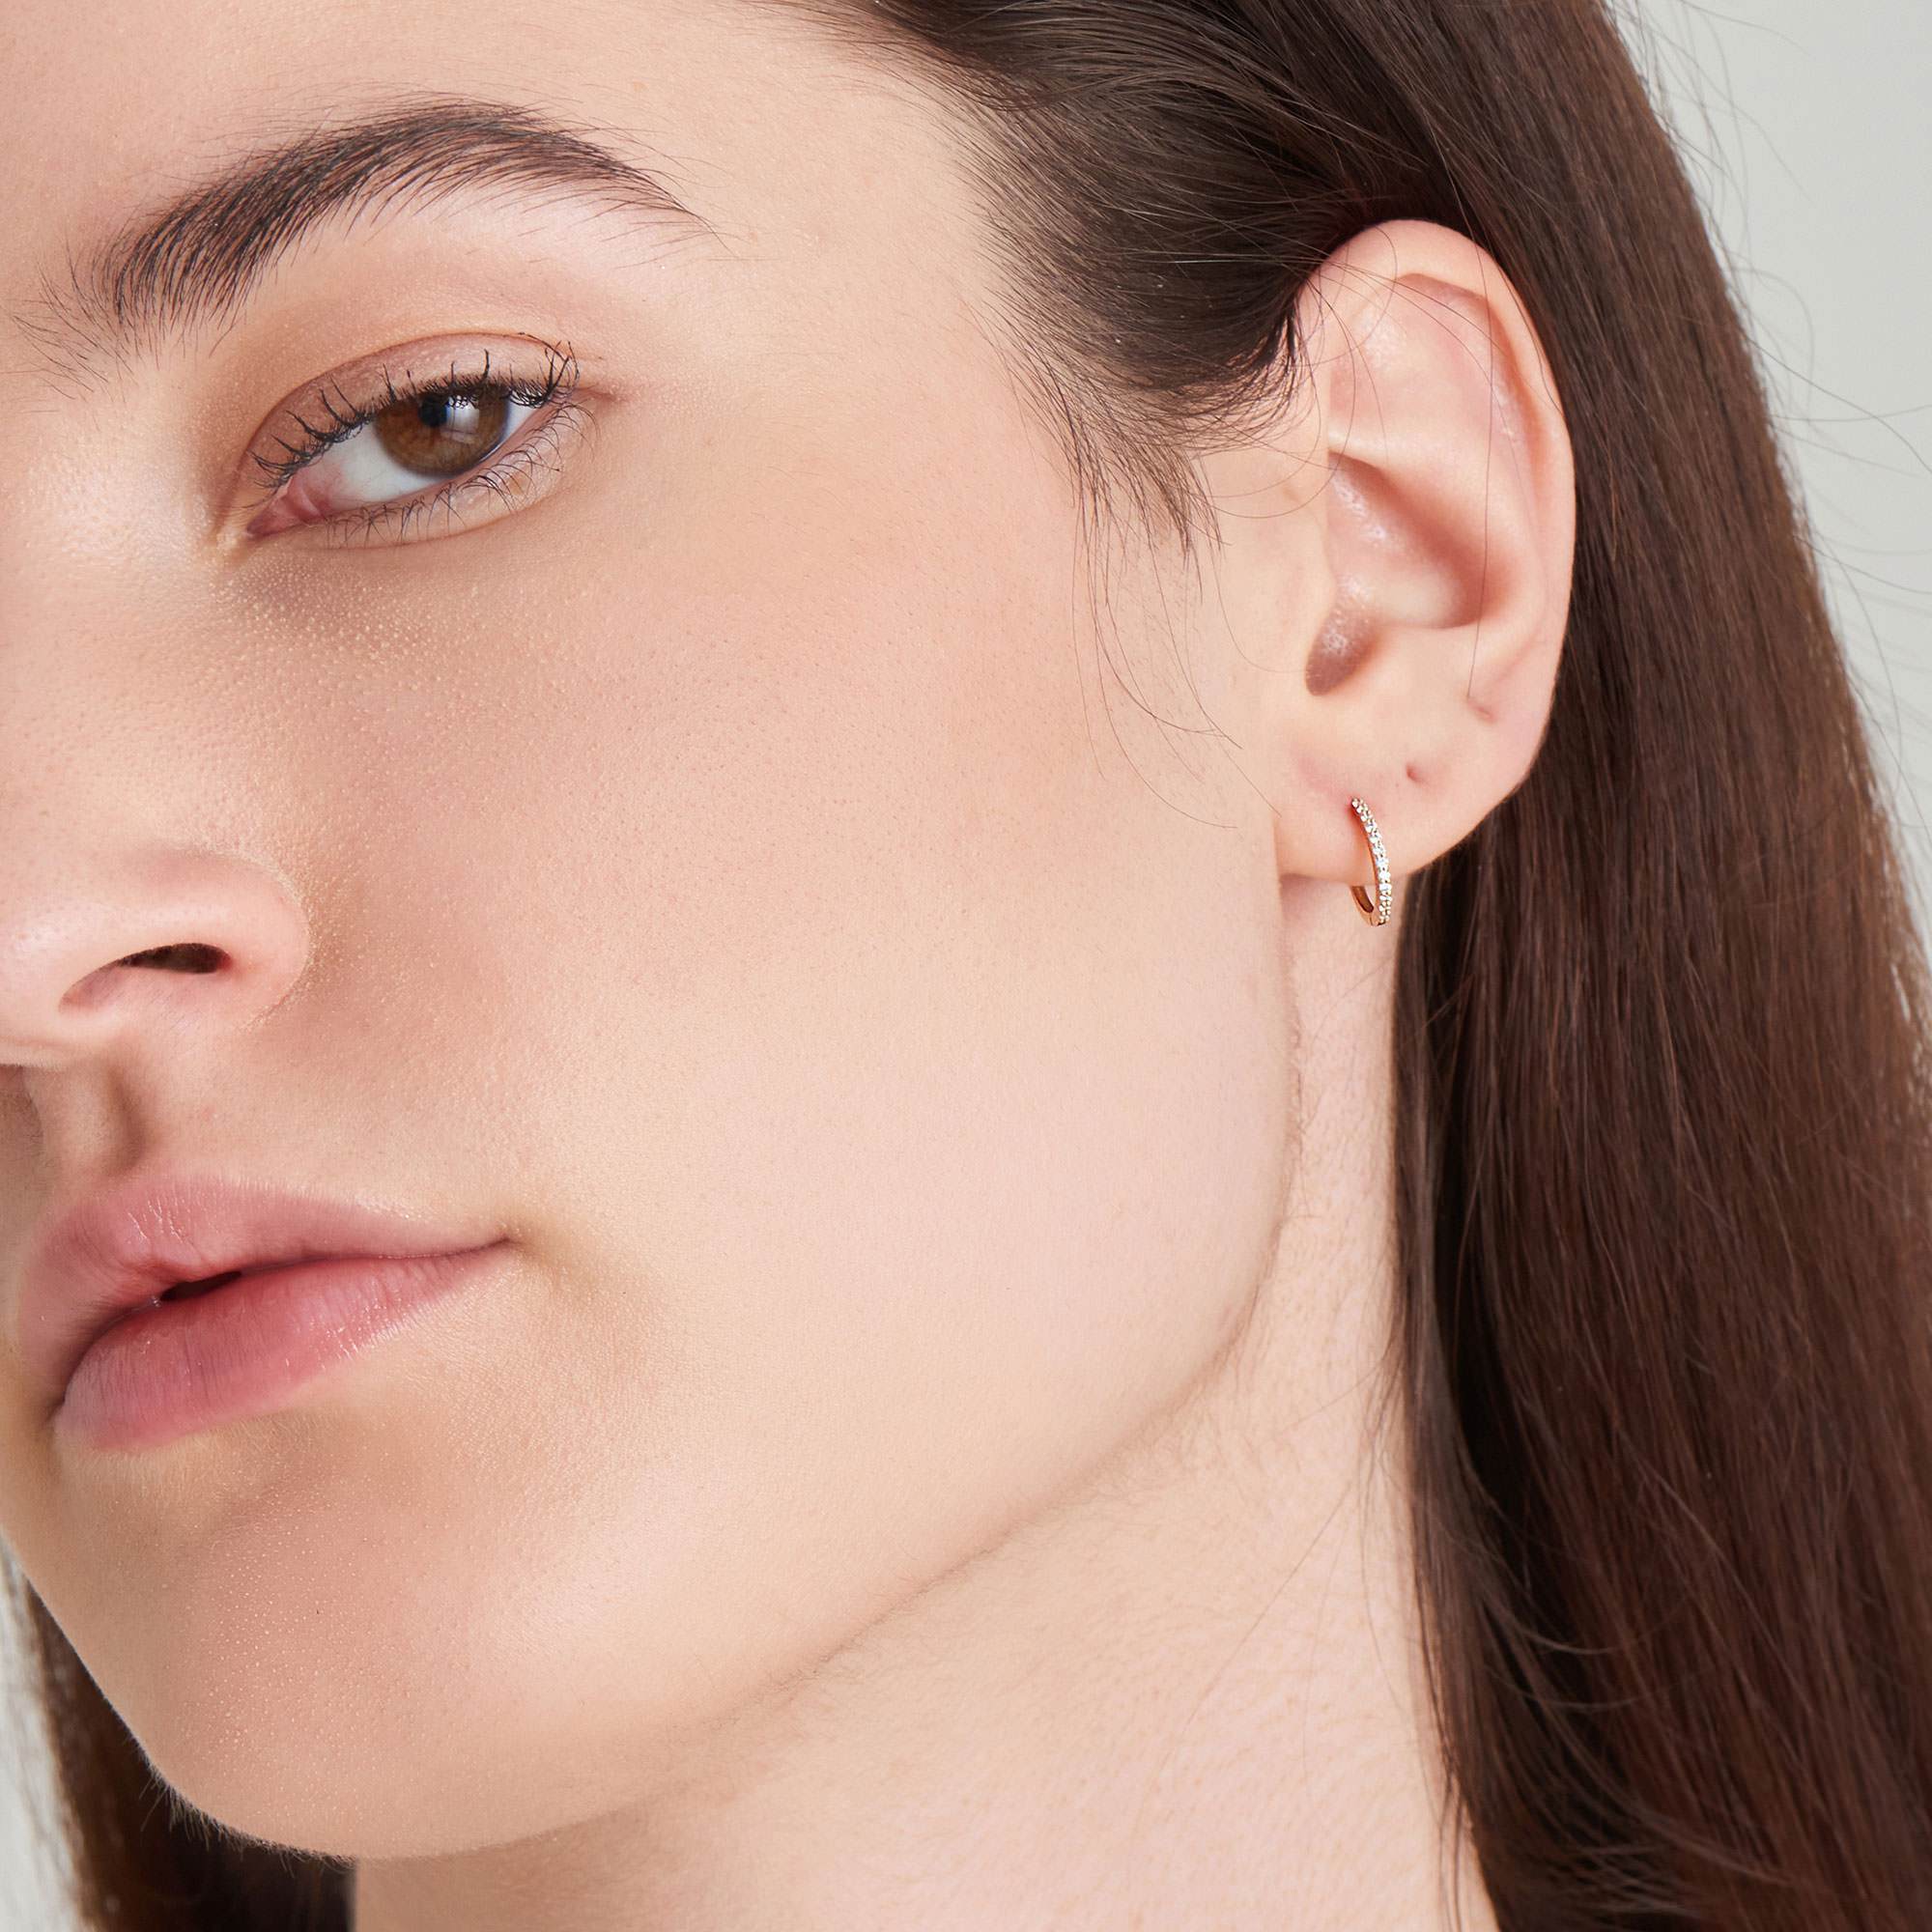 Ania Haie 14ct Gold Natural Diamond Huggie Hoop Earrings